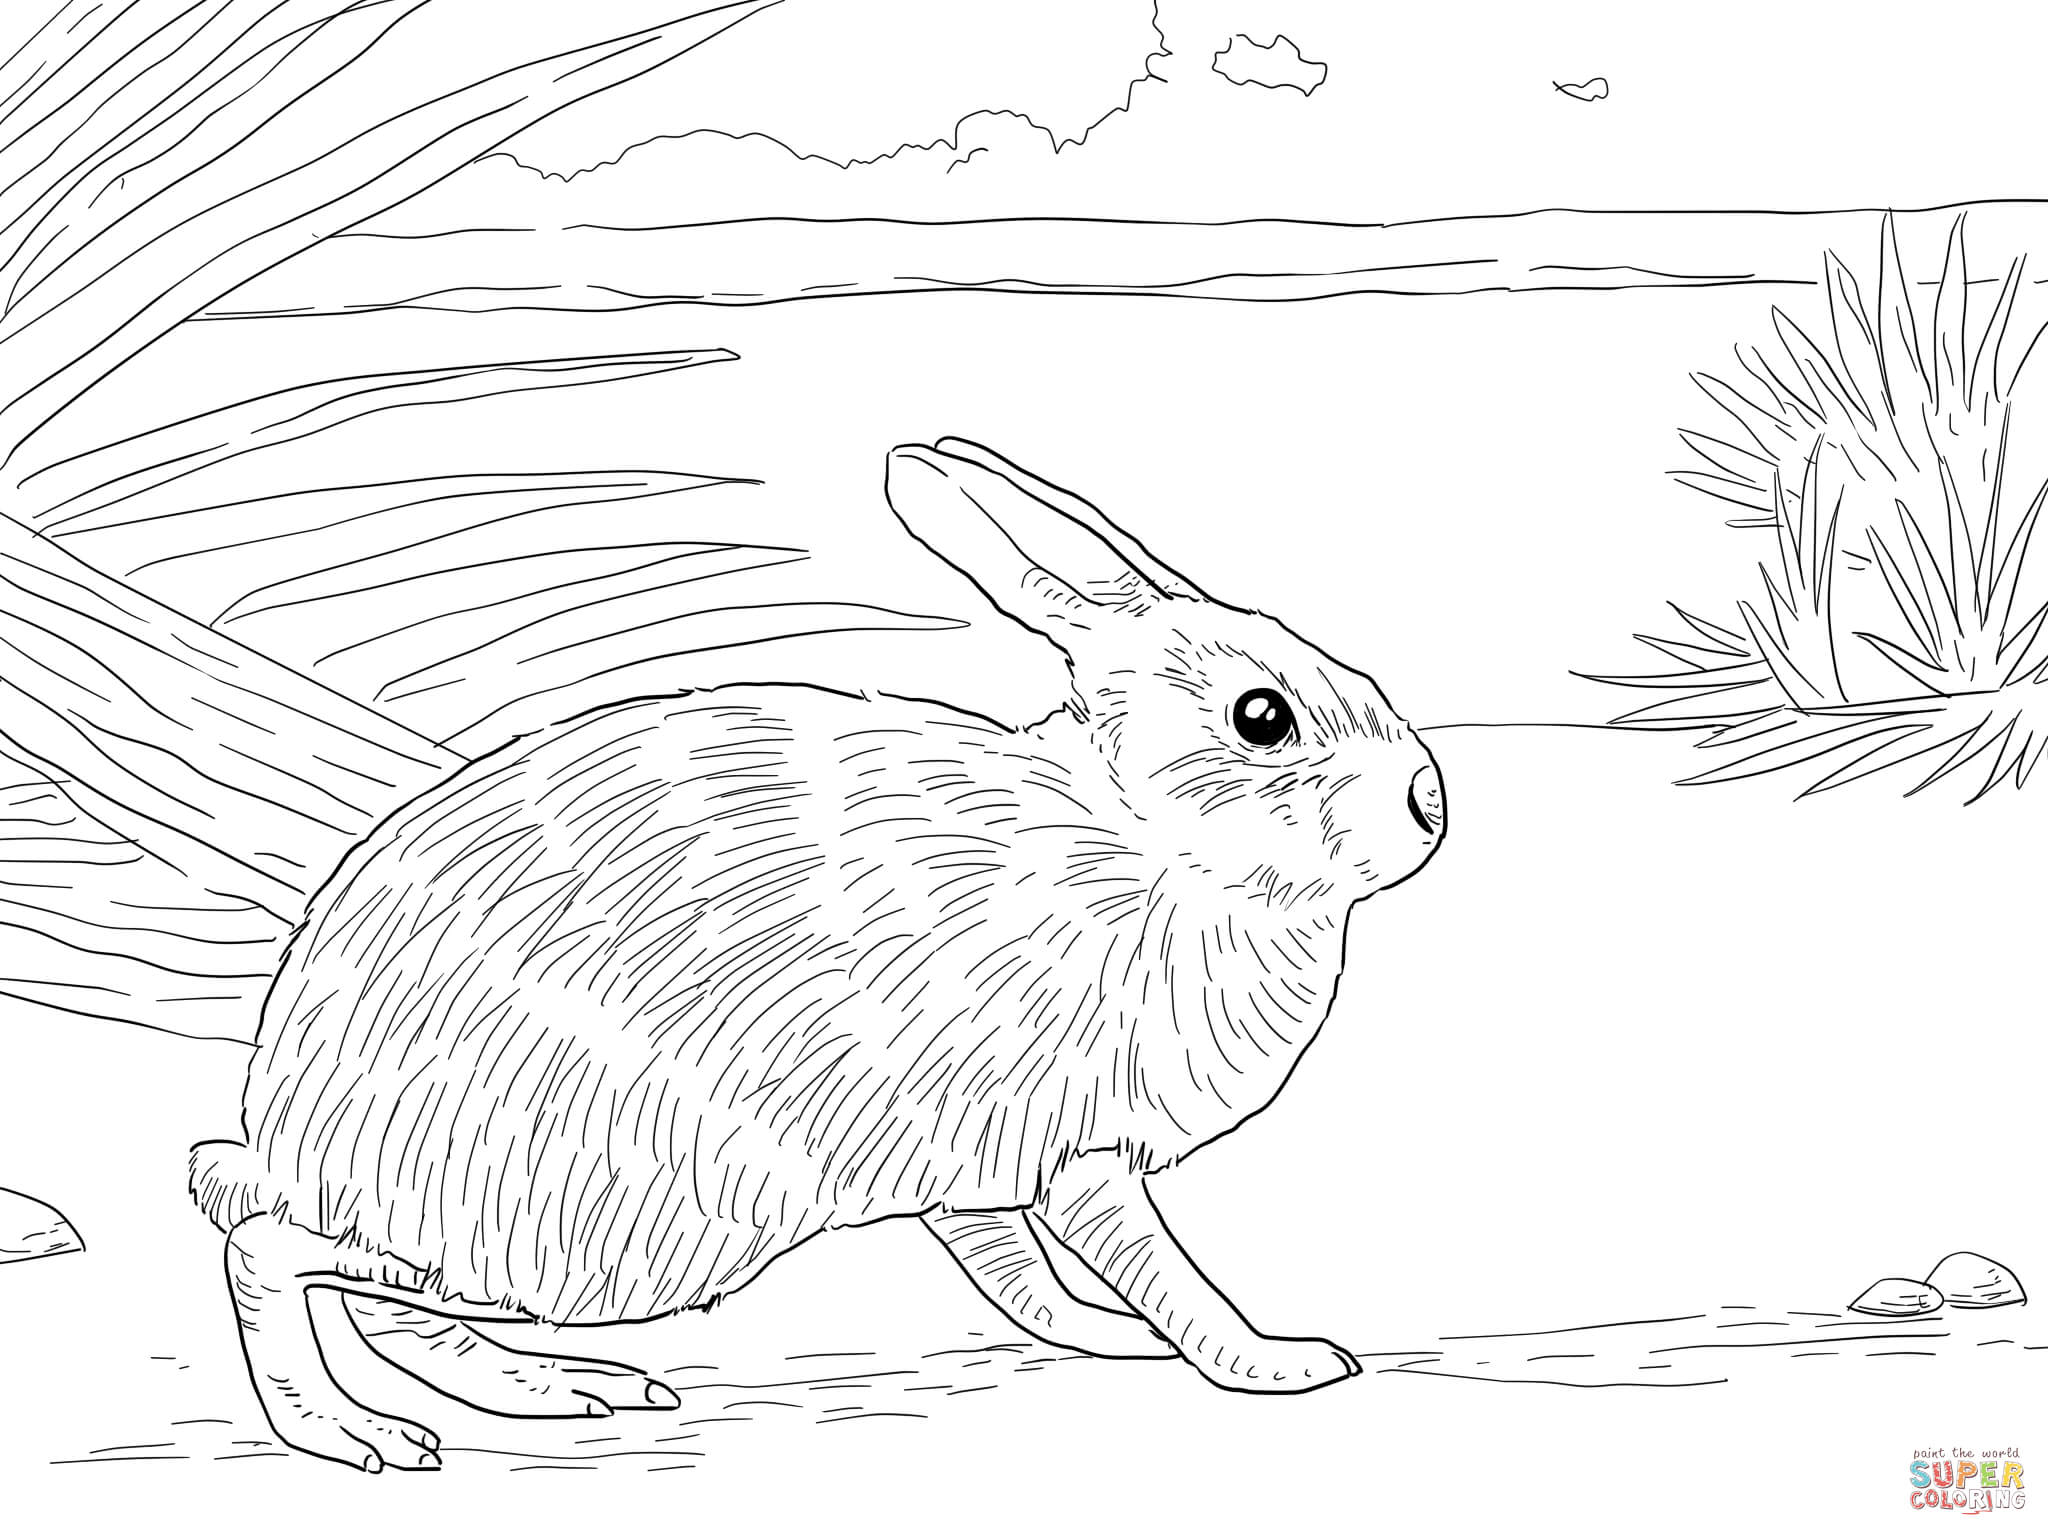 Tranh tô màu chú thỏ trên bãi cỏ